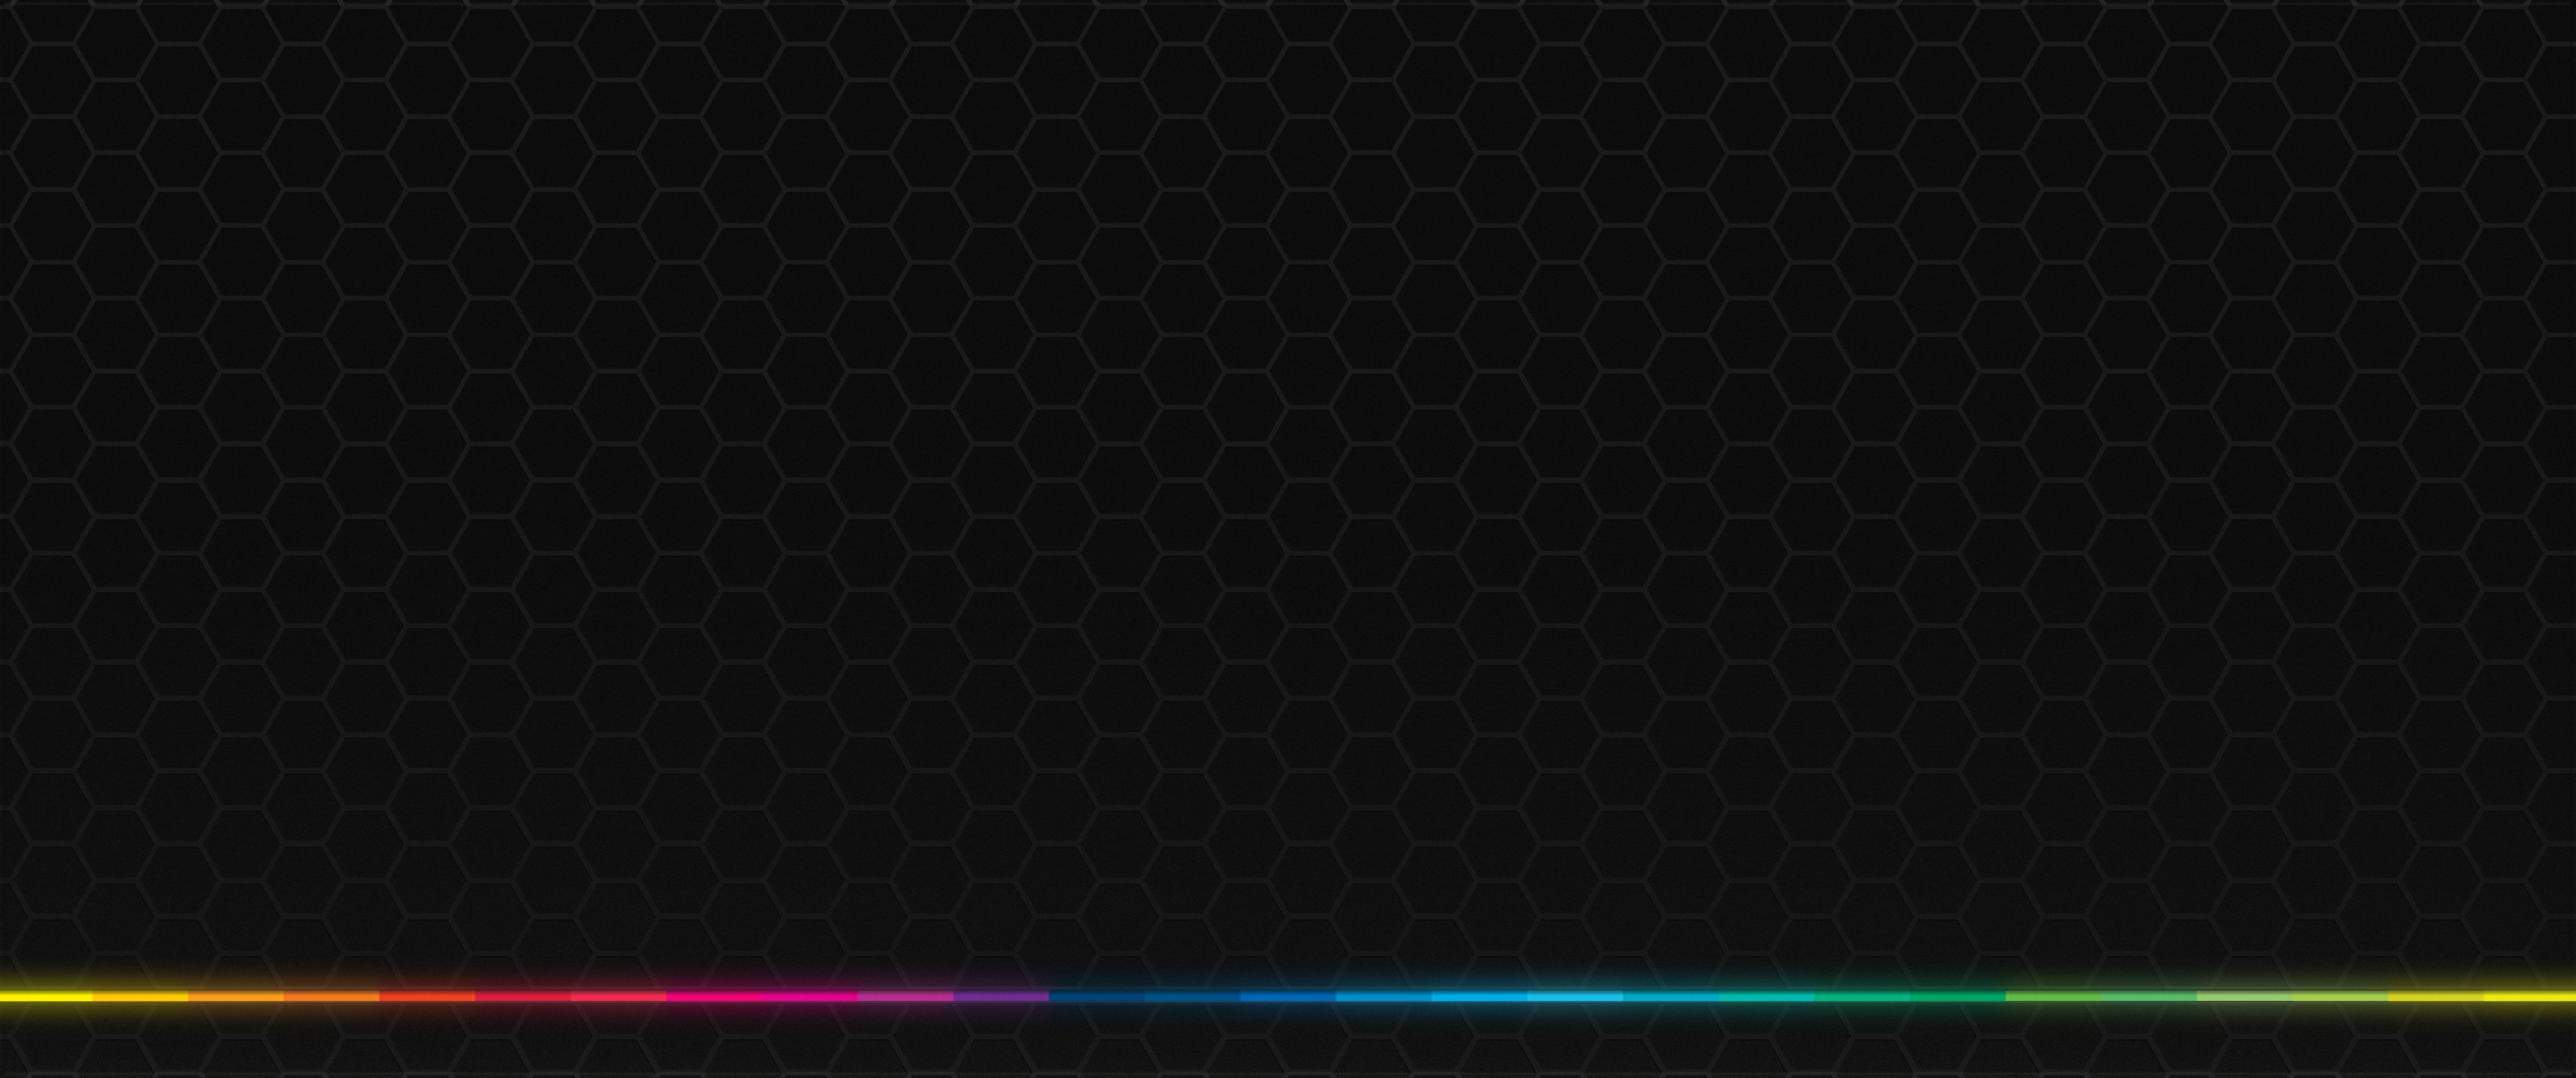 Với họa tiết hexagon phát sáng đầy màu sắc, Glowing Hexagon Texture Spectrum Colorful Minimalism Wallpaper sẽ khiến không gian máy tính của bạn thêm tính thẩm mỹ và hiện đại. Hình nền độc đáo này là sự lựa chọn hoàn hảo cho những ai yêu thích sự đơn giản và ngăn nắp.